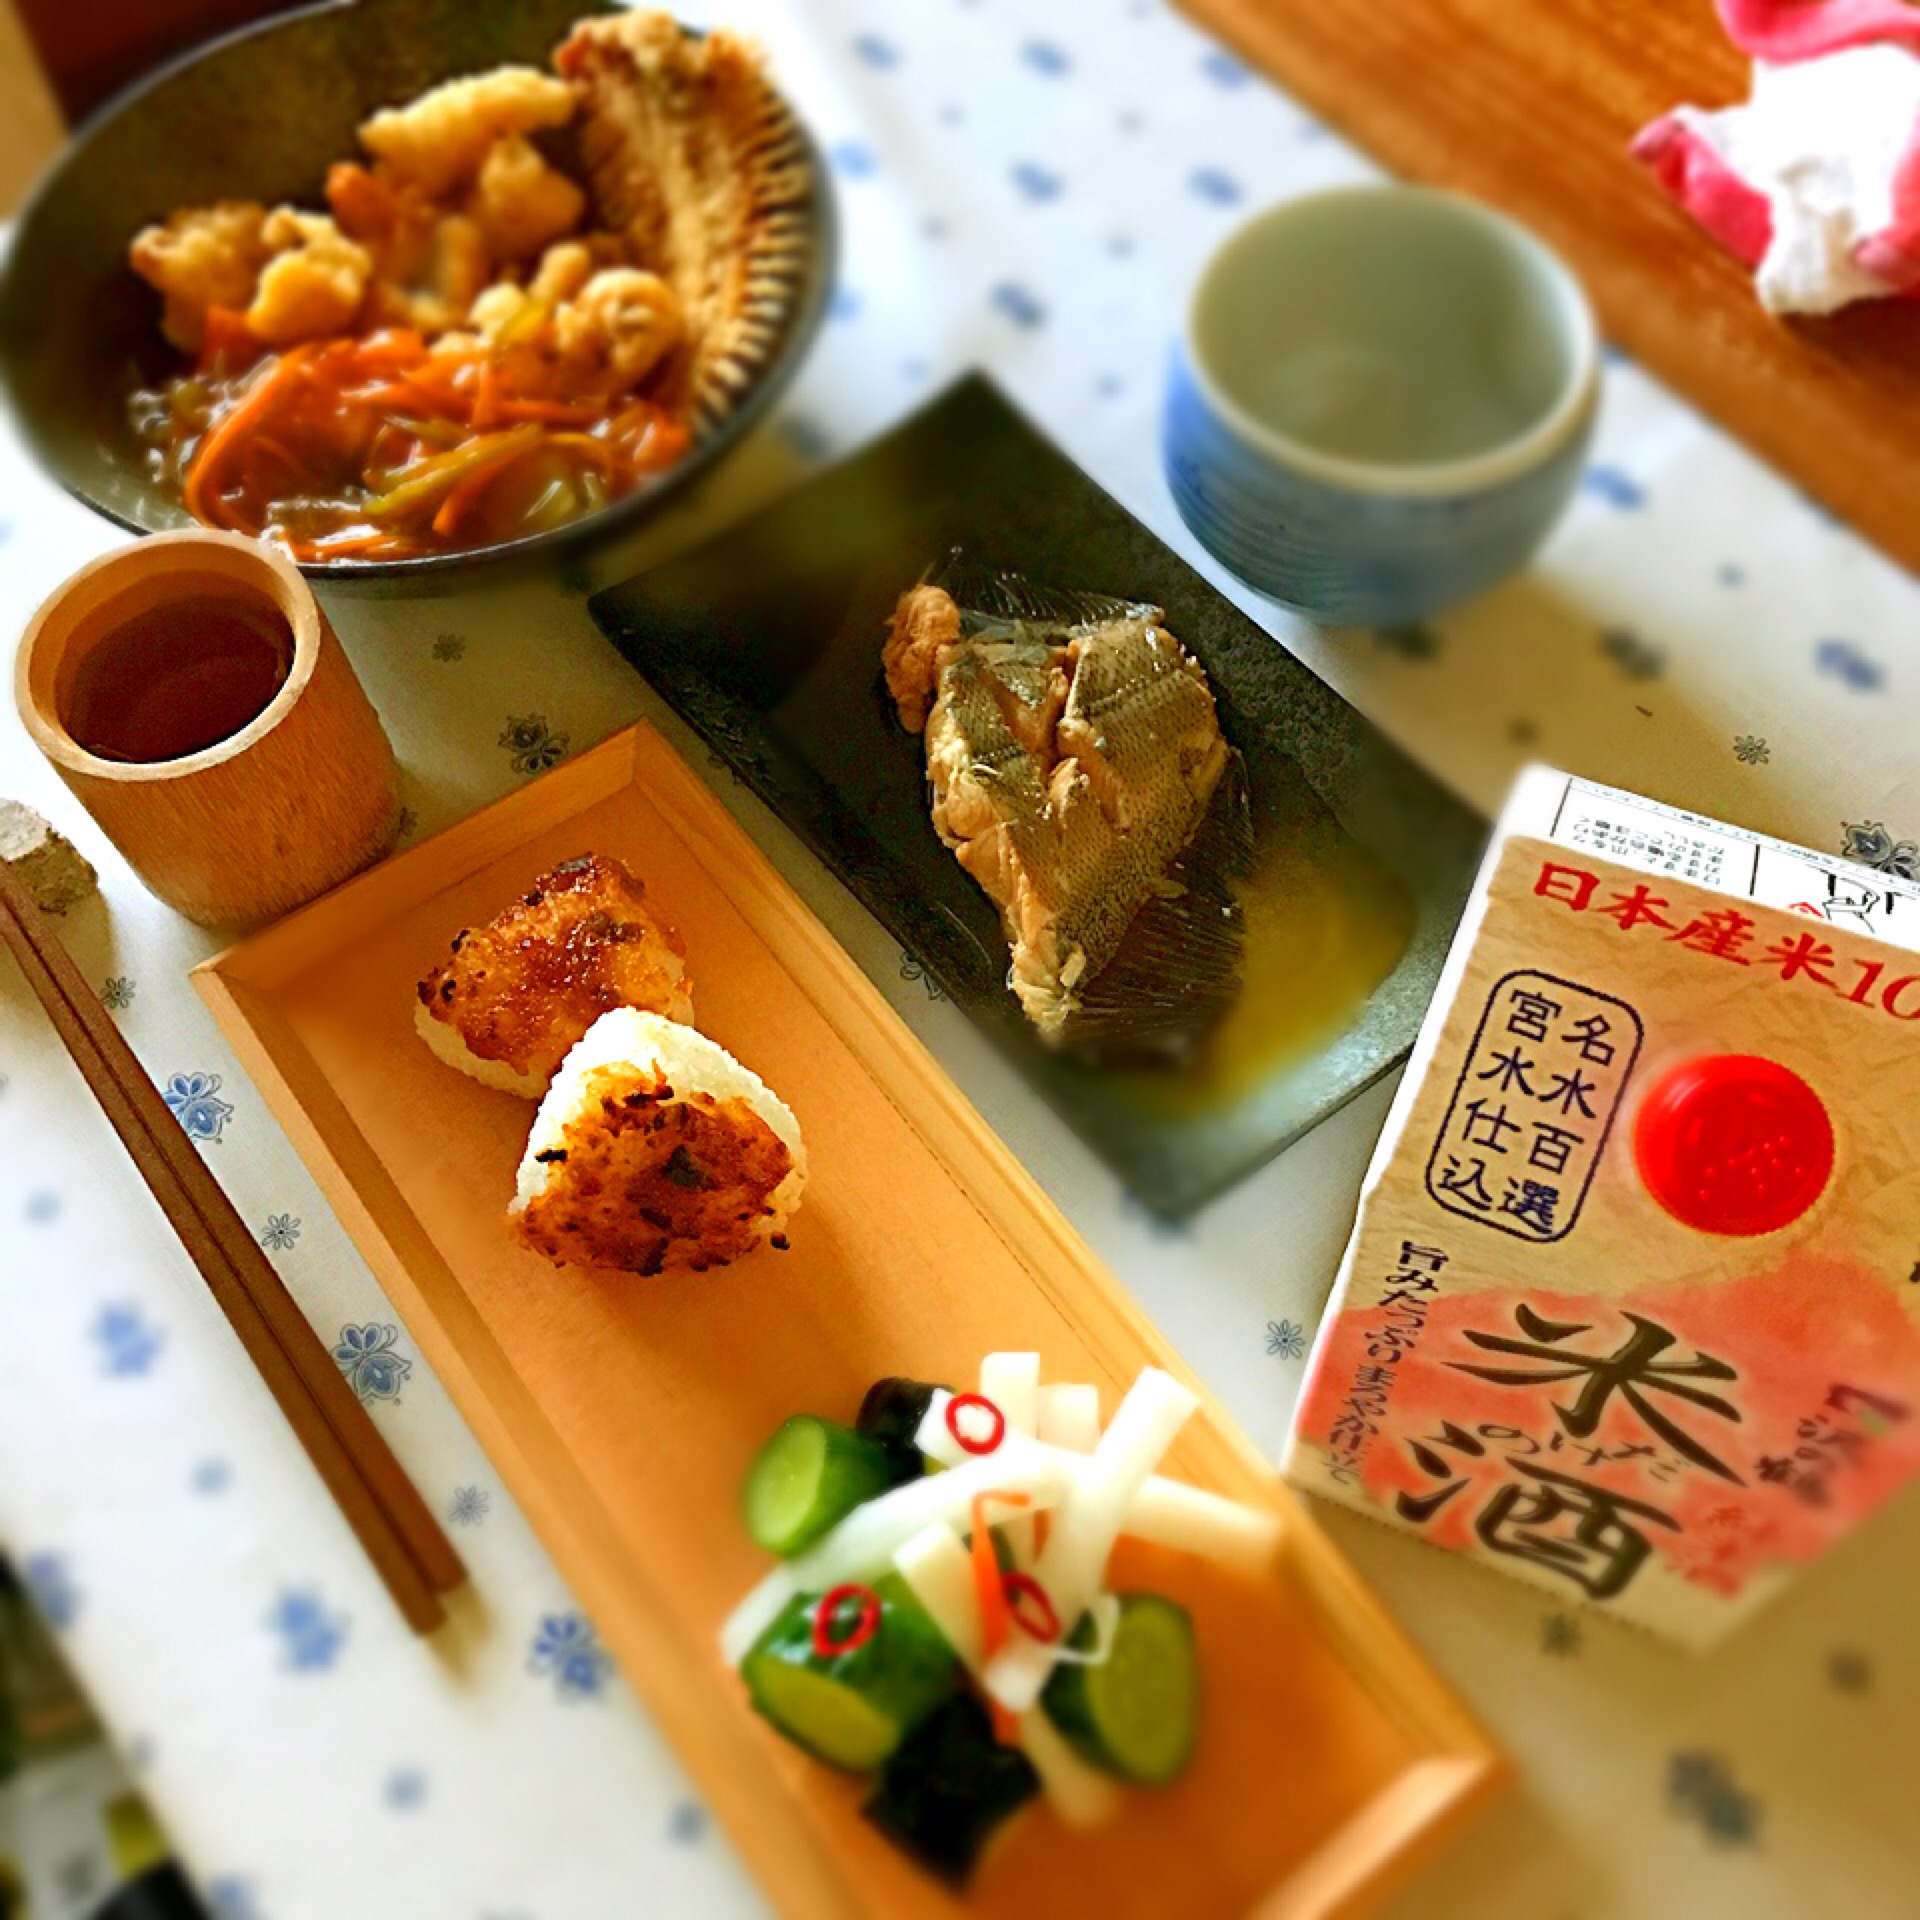 晩御飯
日本酒と魚